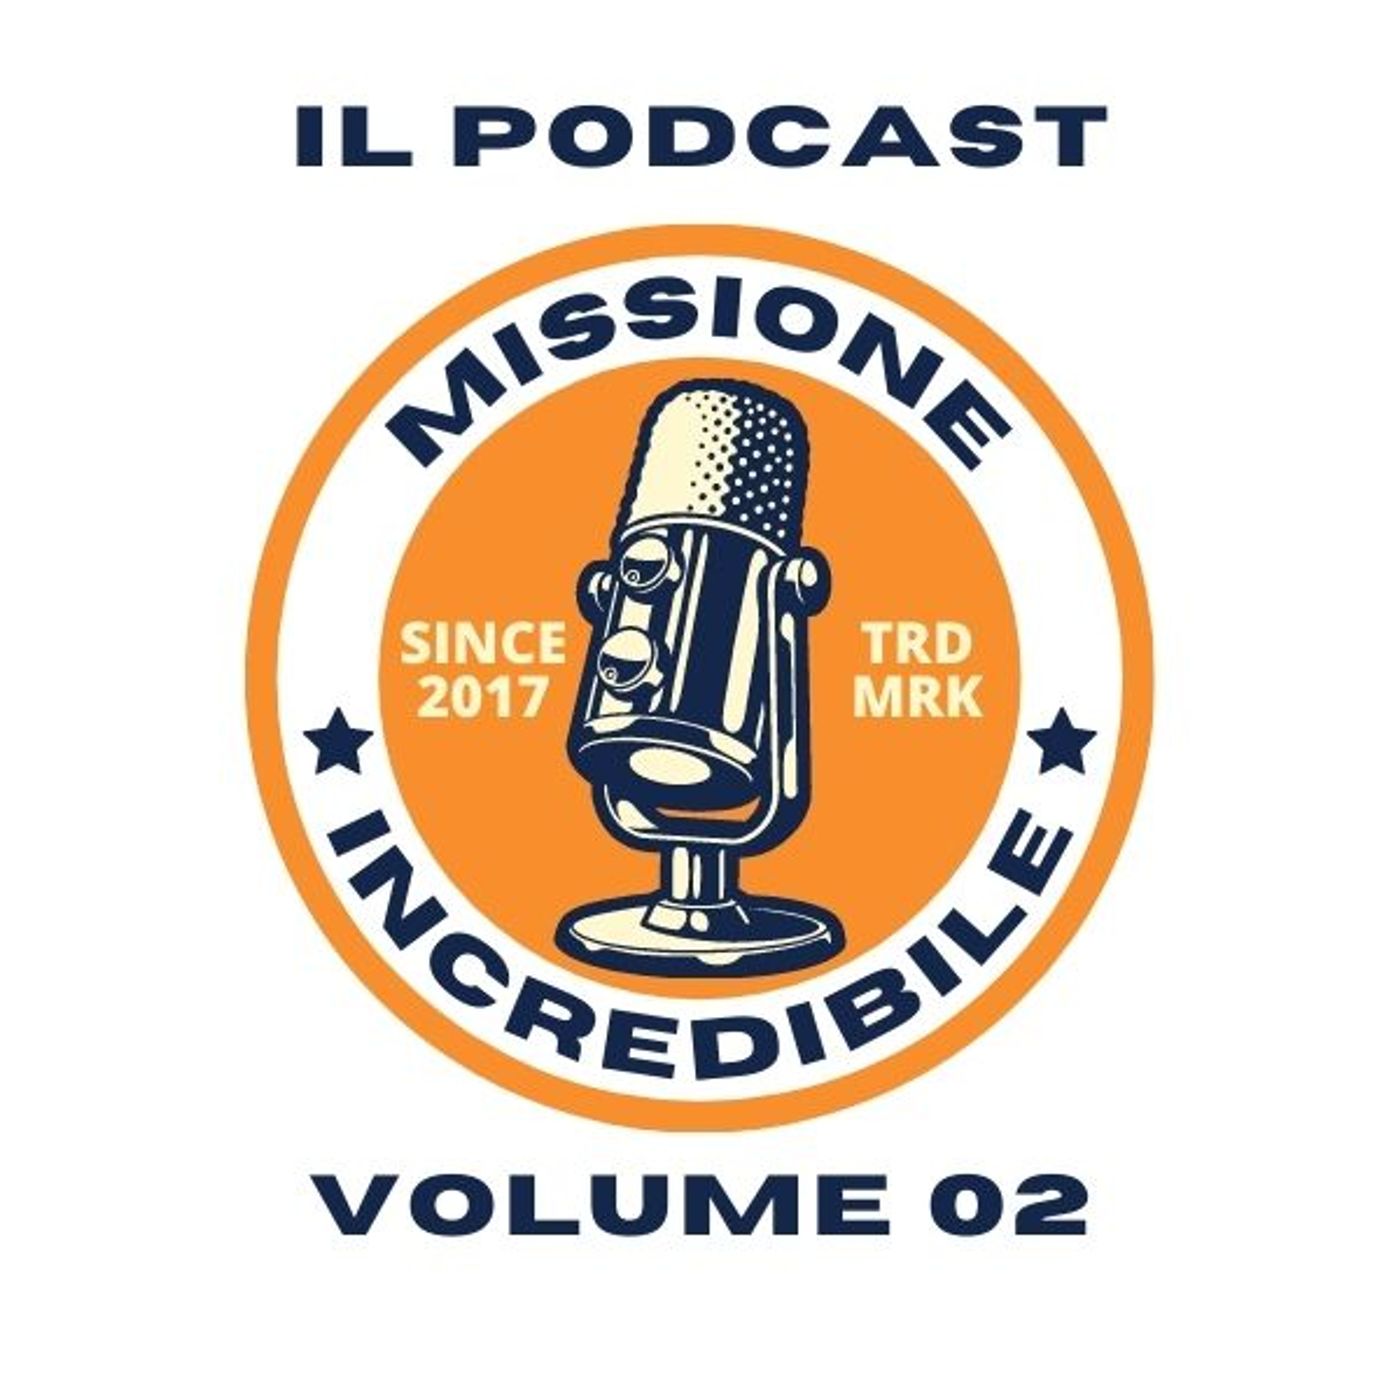 Missione Incredibile, il Podcast, Volume 02